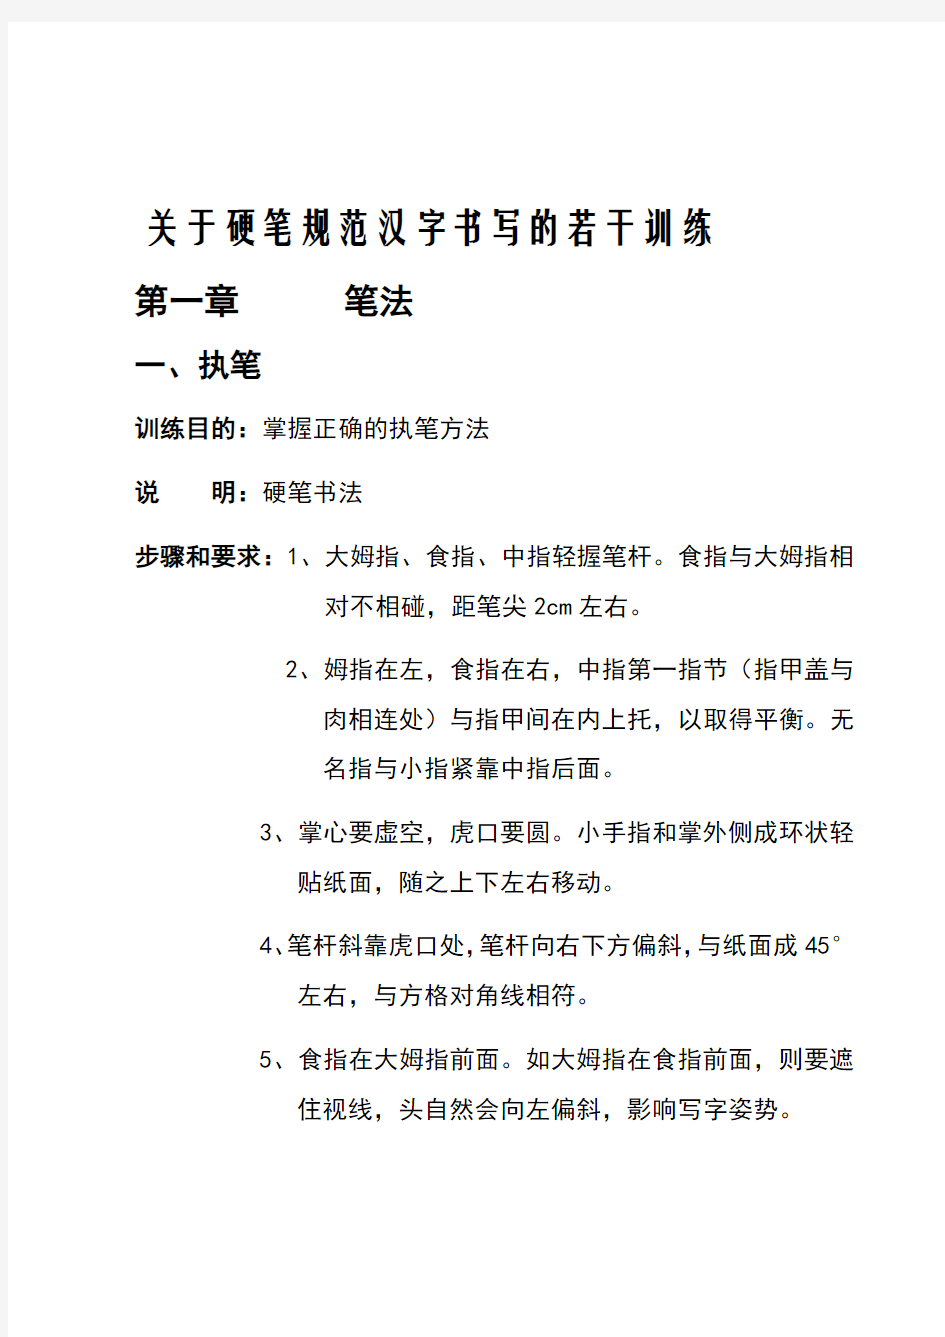 小学生规范汉字书写教程(1)